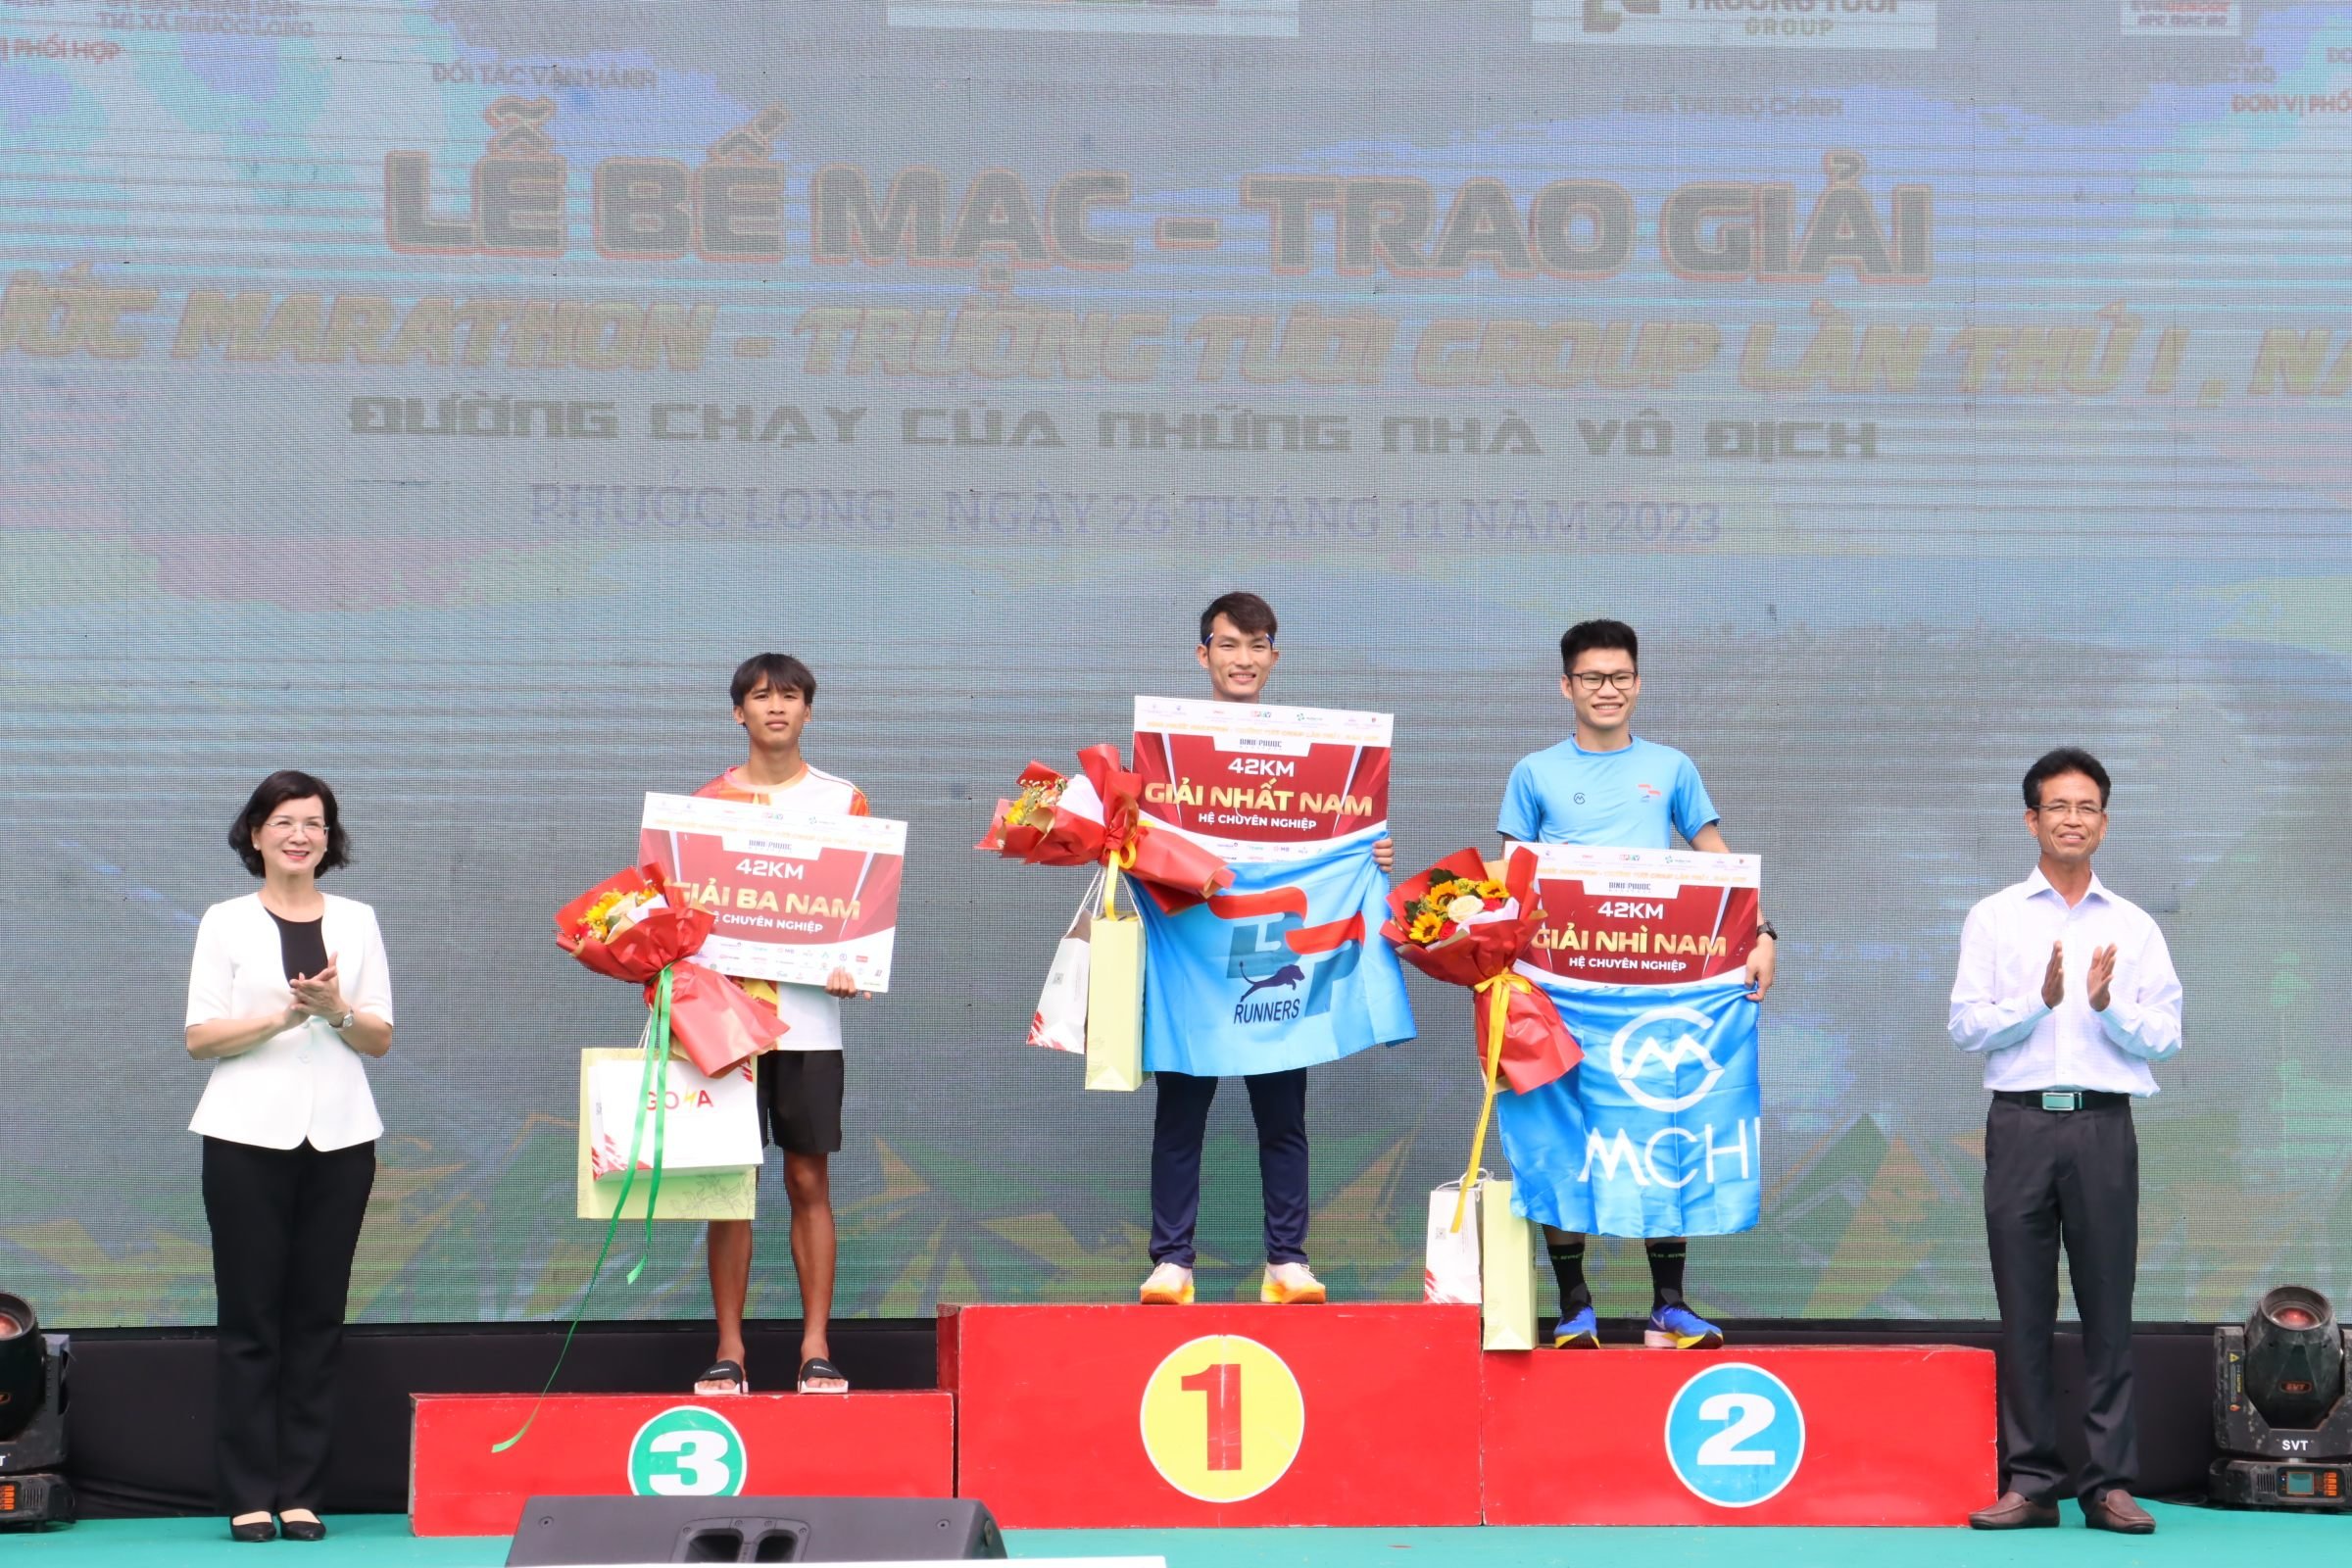 Cần biết - Bình Phước: Gần 5.000 vận động viên tham gia Giải Bình Phước marathon (Hình 6).